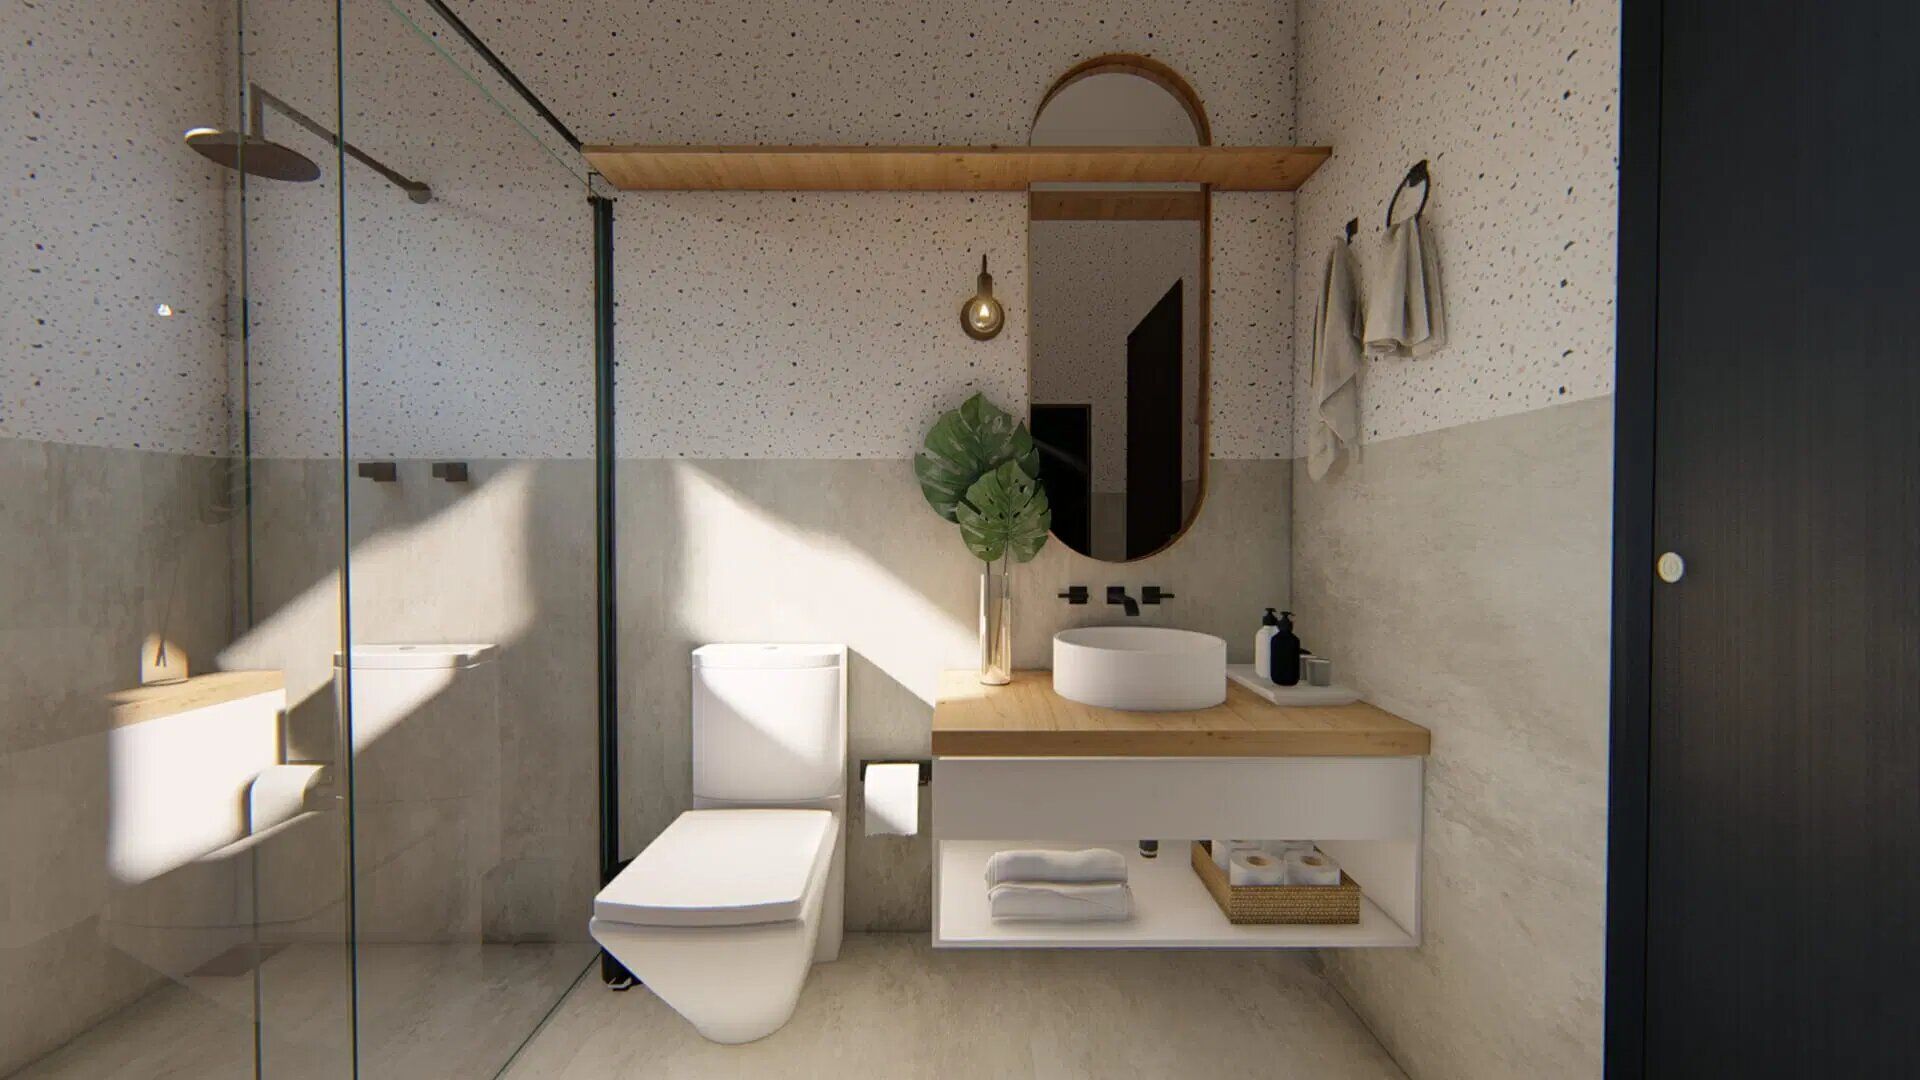 Ванная комната в стиле минимализм - 5 идей для вашего интерьера - Недвижимость